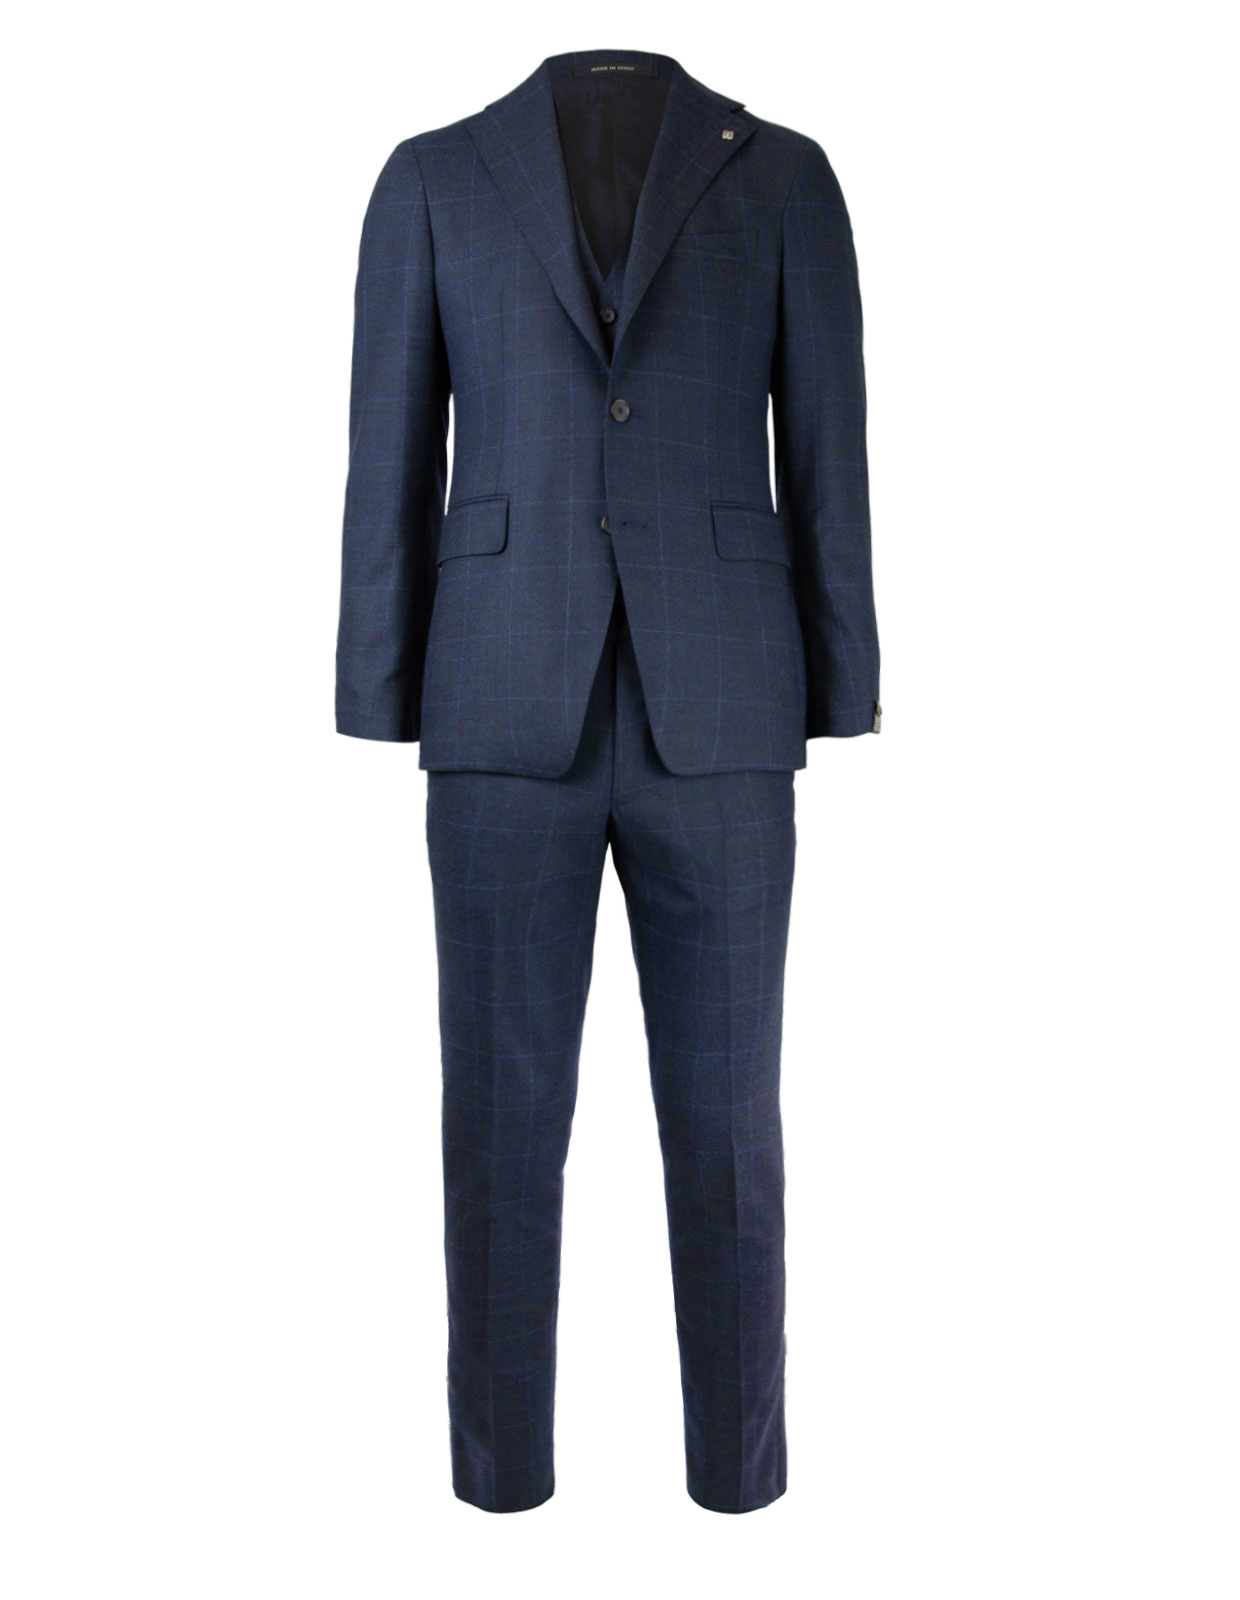 Vesuvio 3-piece Suit Wool Dark Blue Check